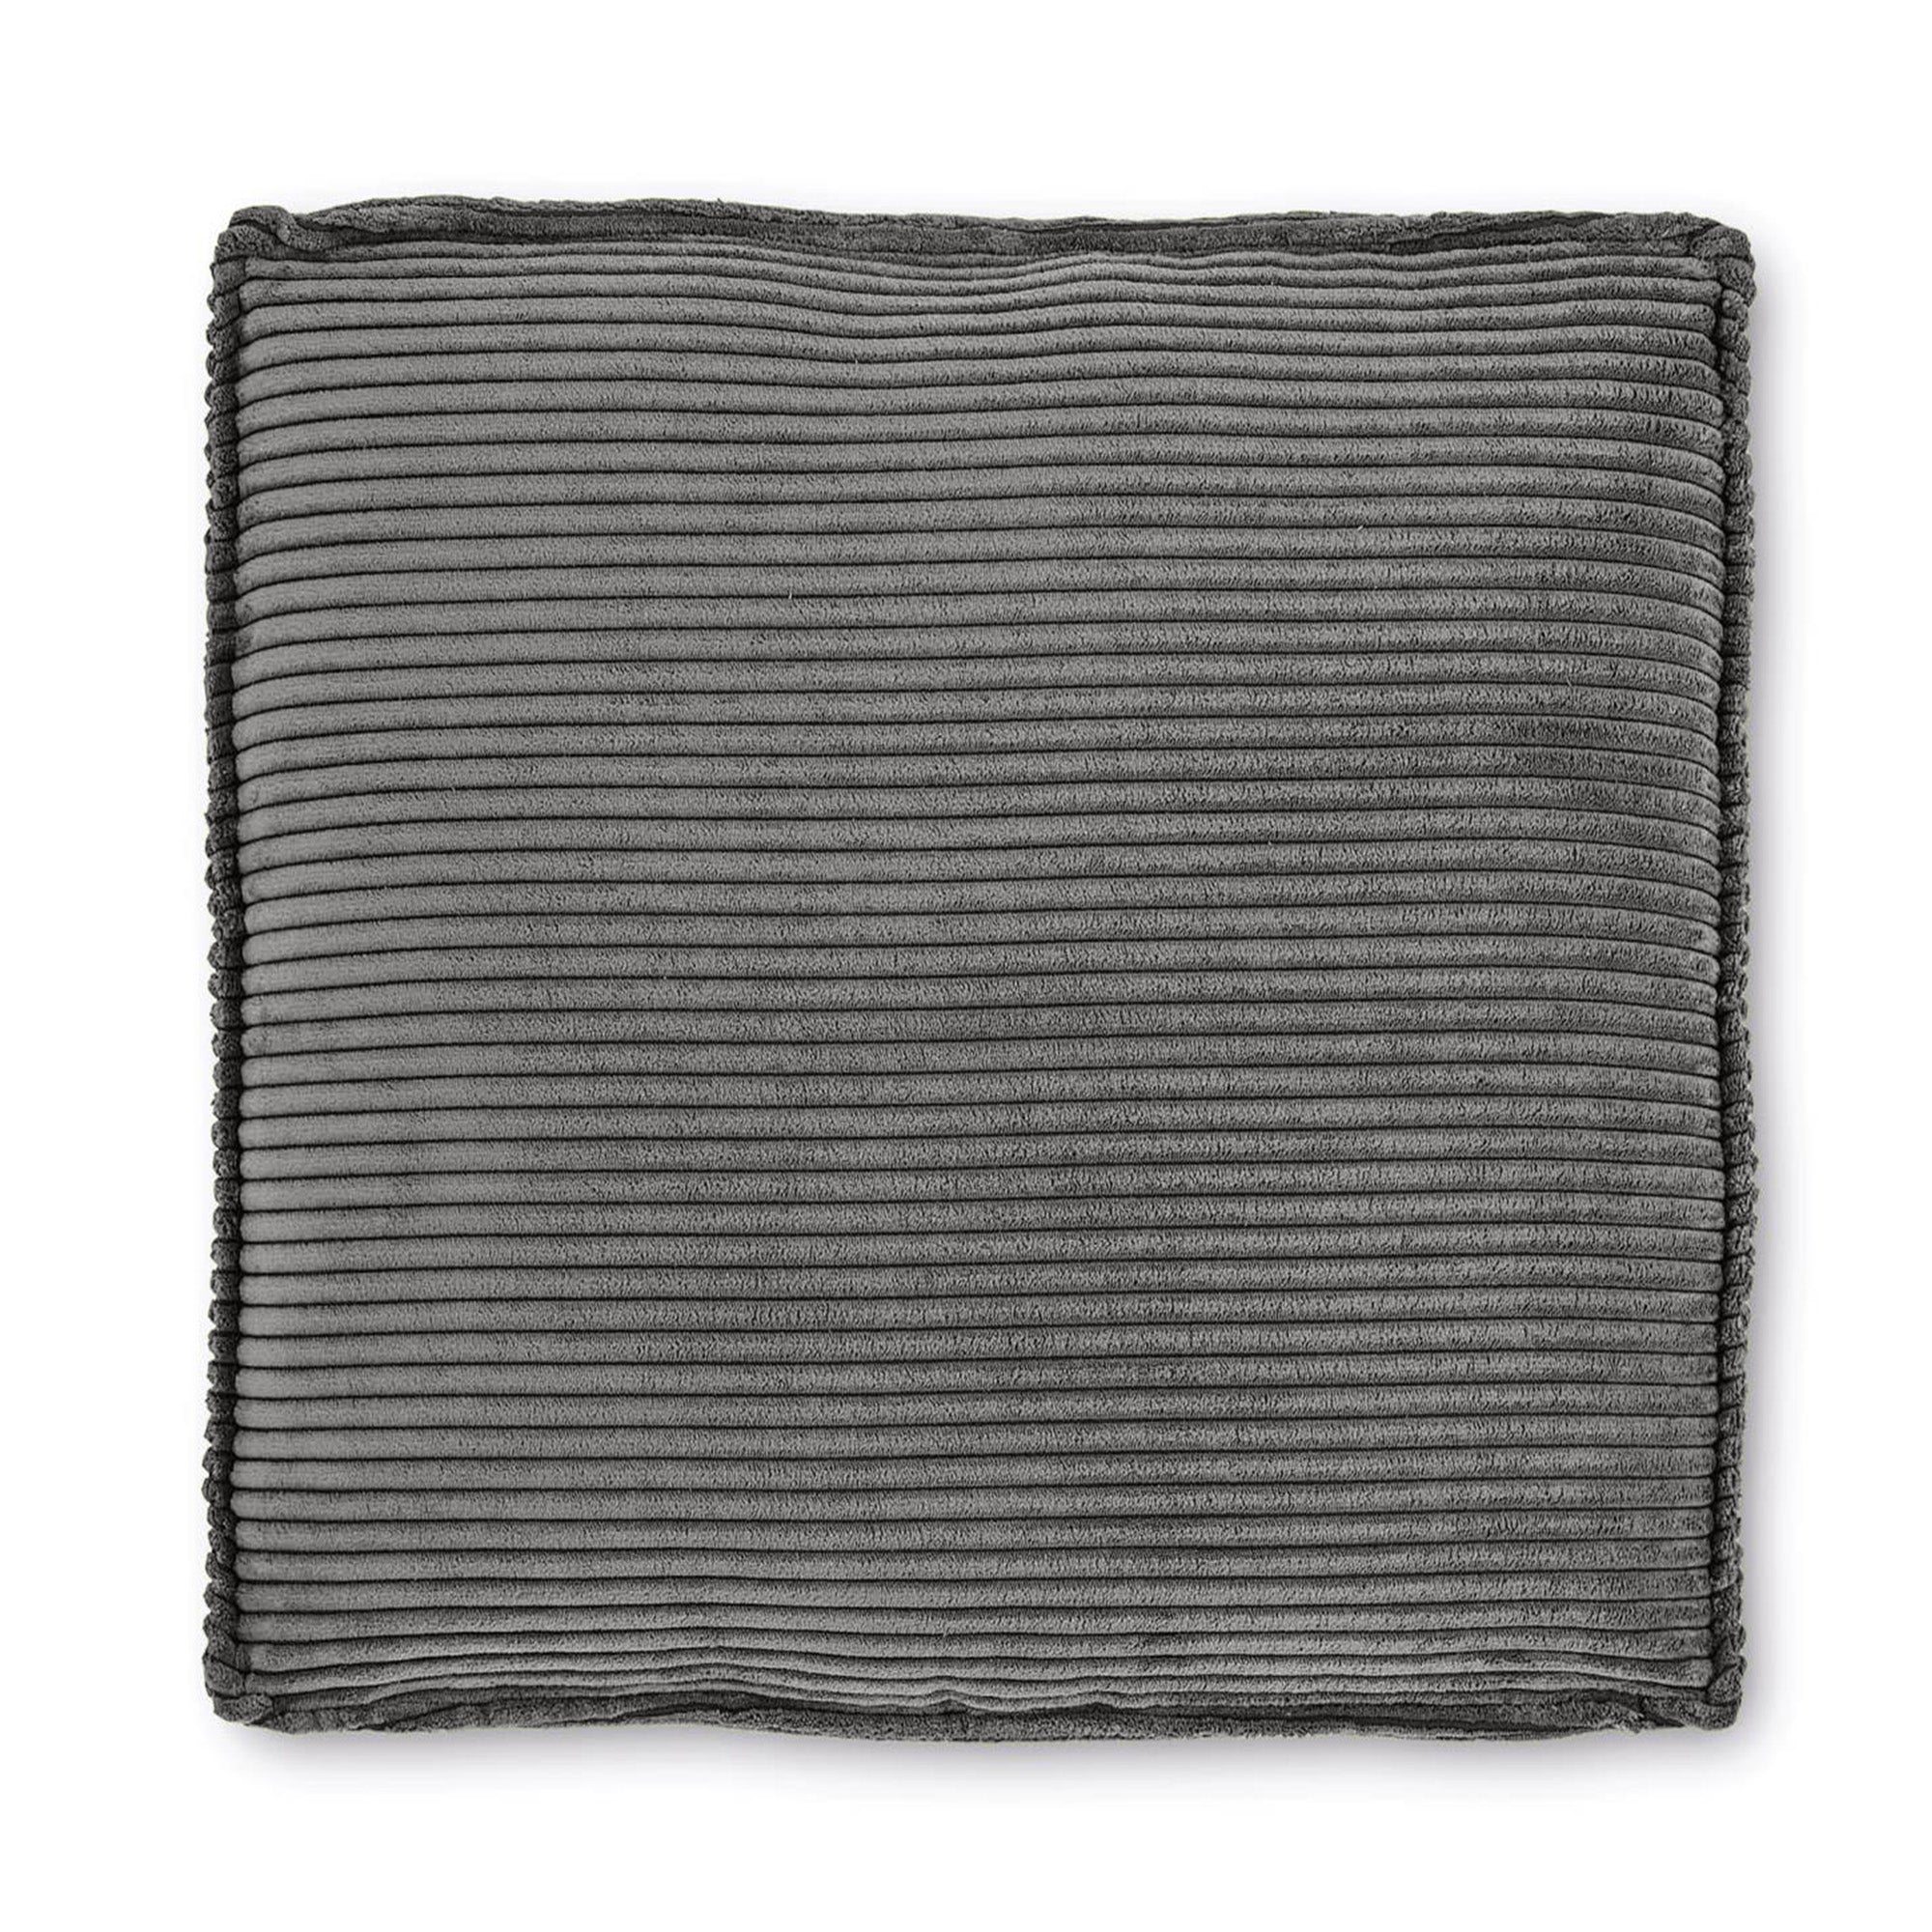 Blok cushion in grey wide seam corduroy, 60 x 60 cm